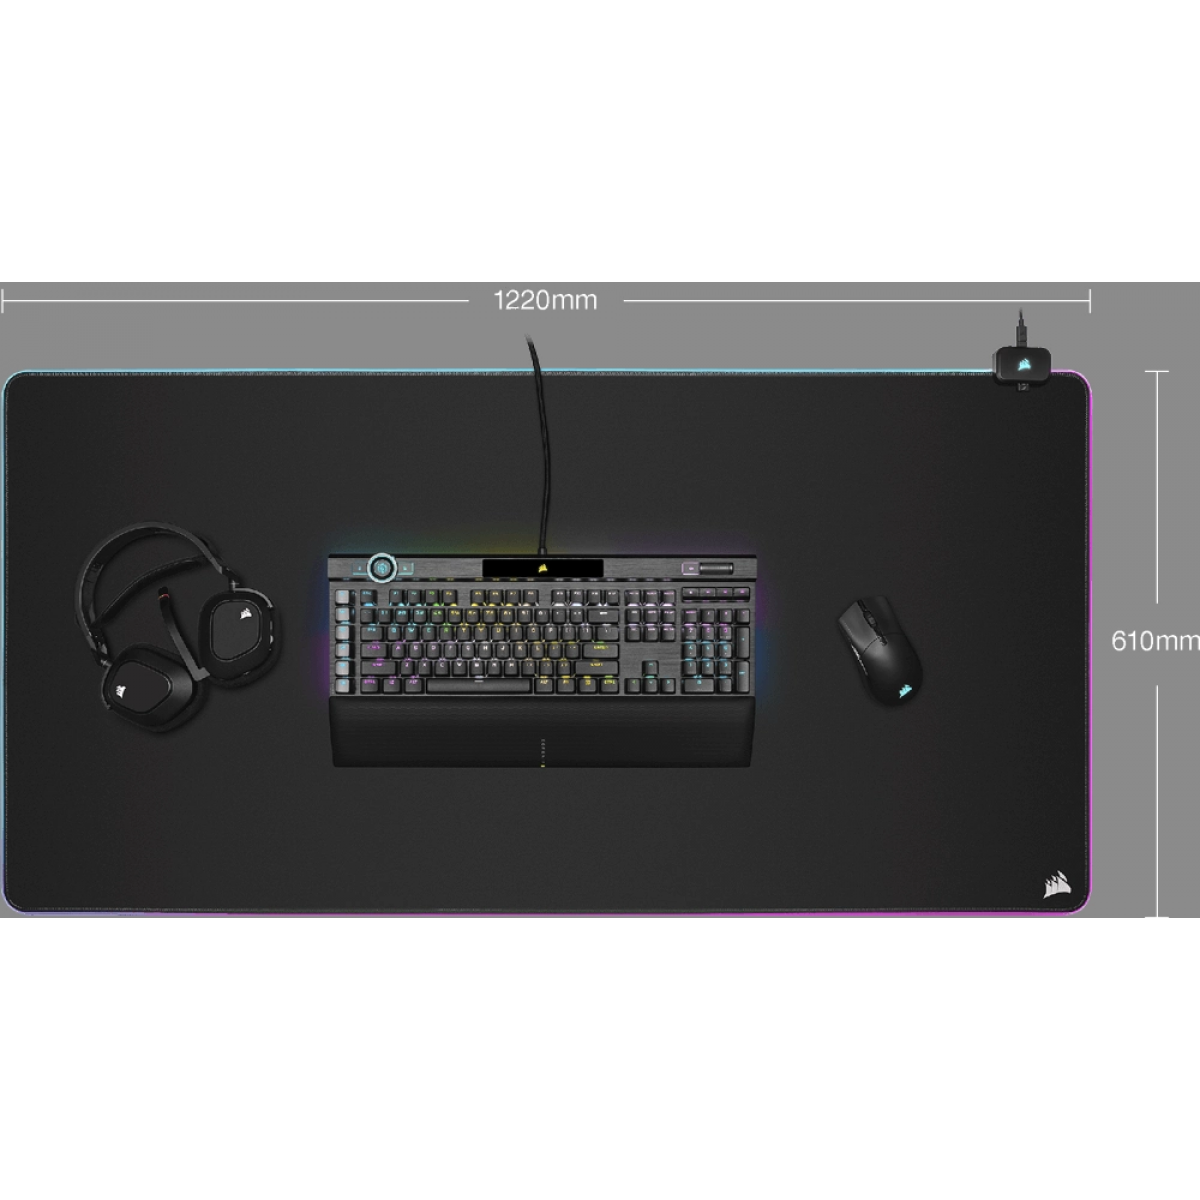 Bàn di chuột Corsair MM700 RGB Gaming - 3XL